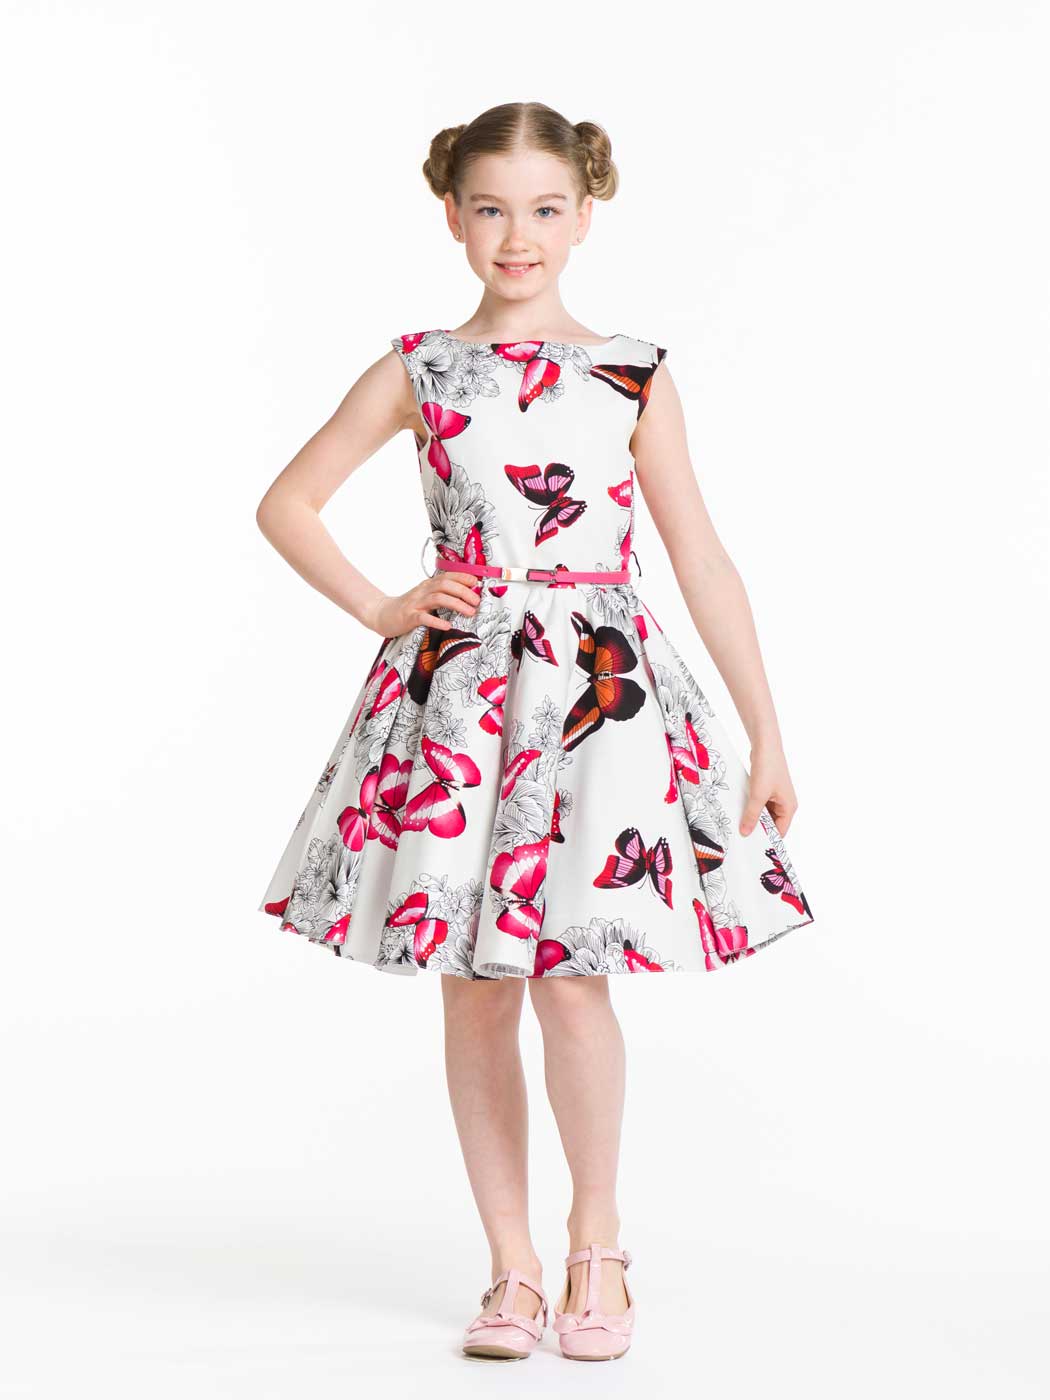 Фото товара Праздничное платье для девочки Принцесса цветов 01005008 от Красавушка